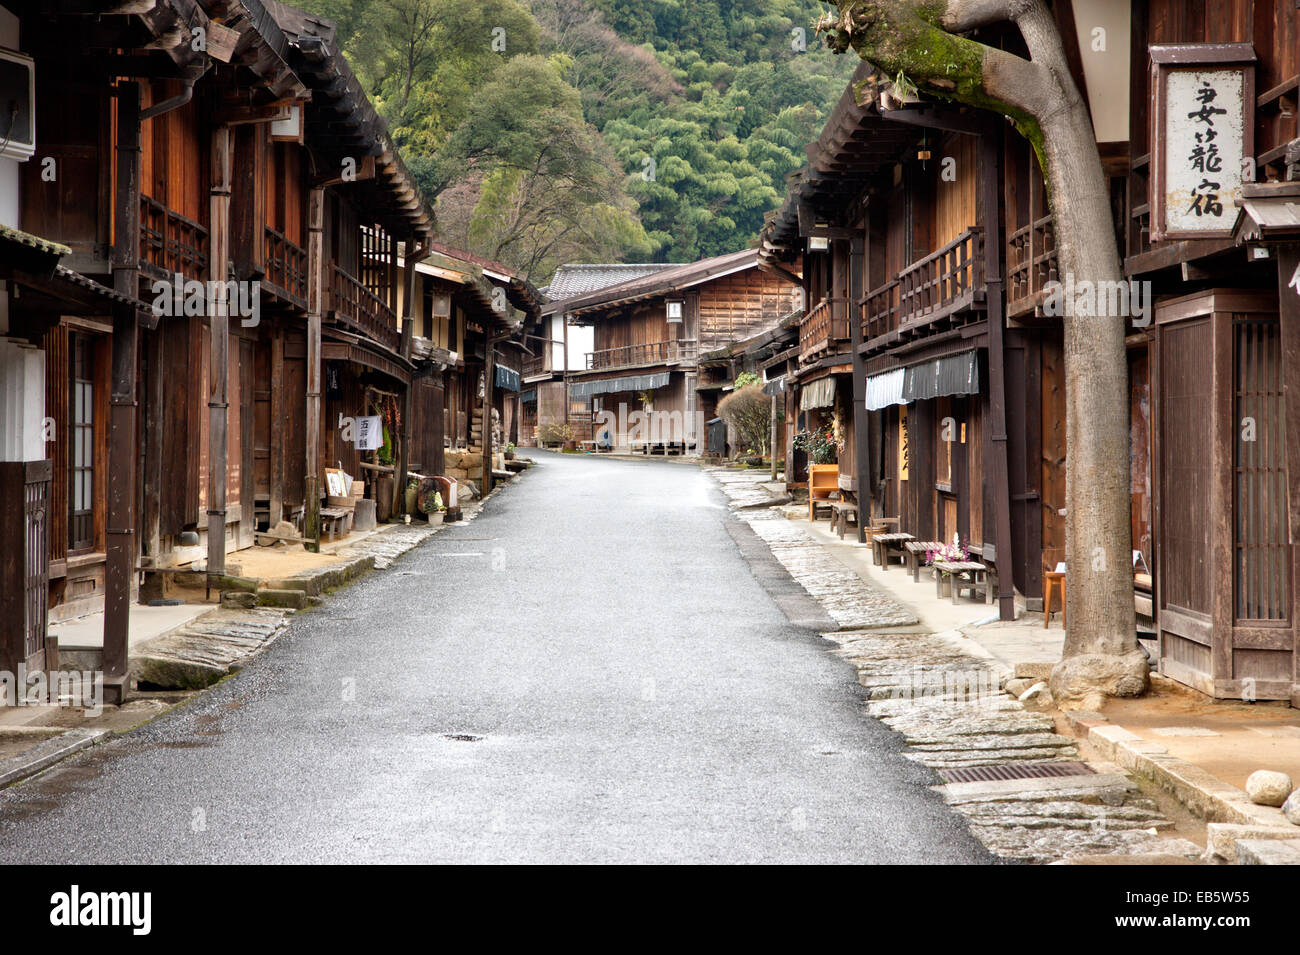 Calle Terashita en Tsumago, Japón, parte de la autopista Nakasendo del período Edo, con edificios de madera que incluyen ryokan, posadas, minshuku y tiendas. Foto de stock